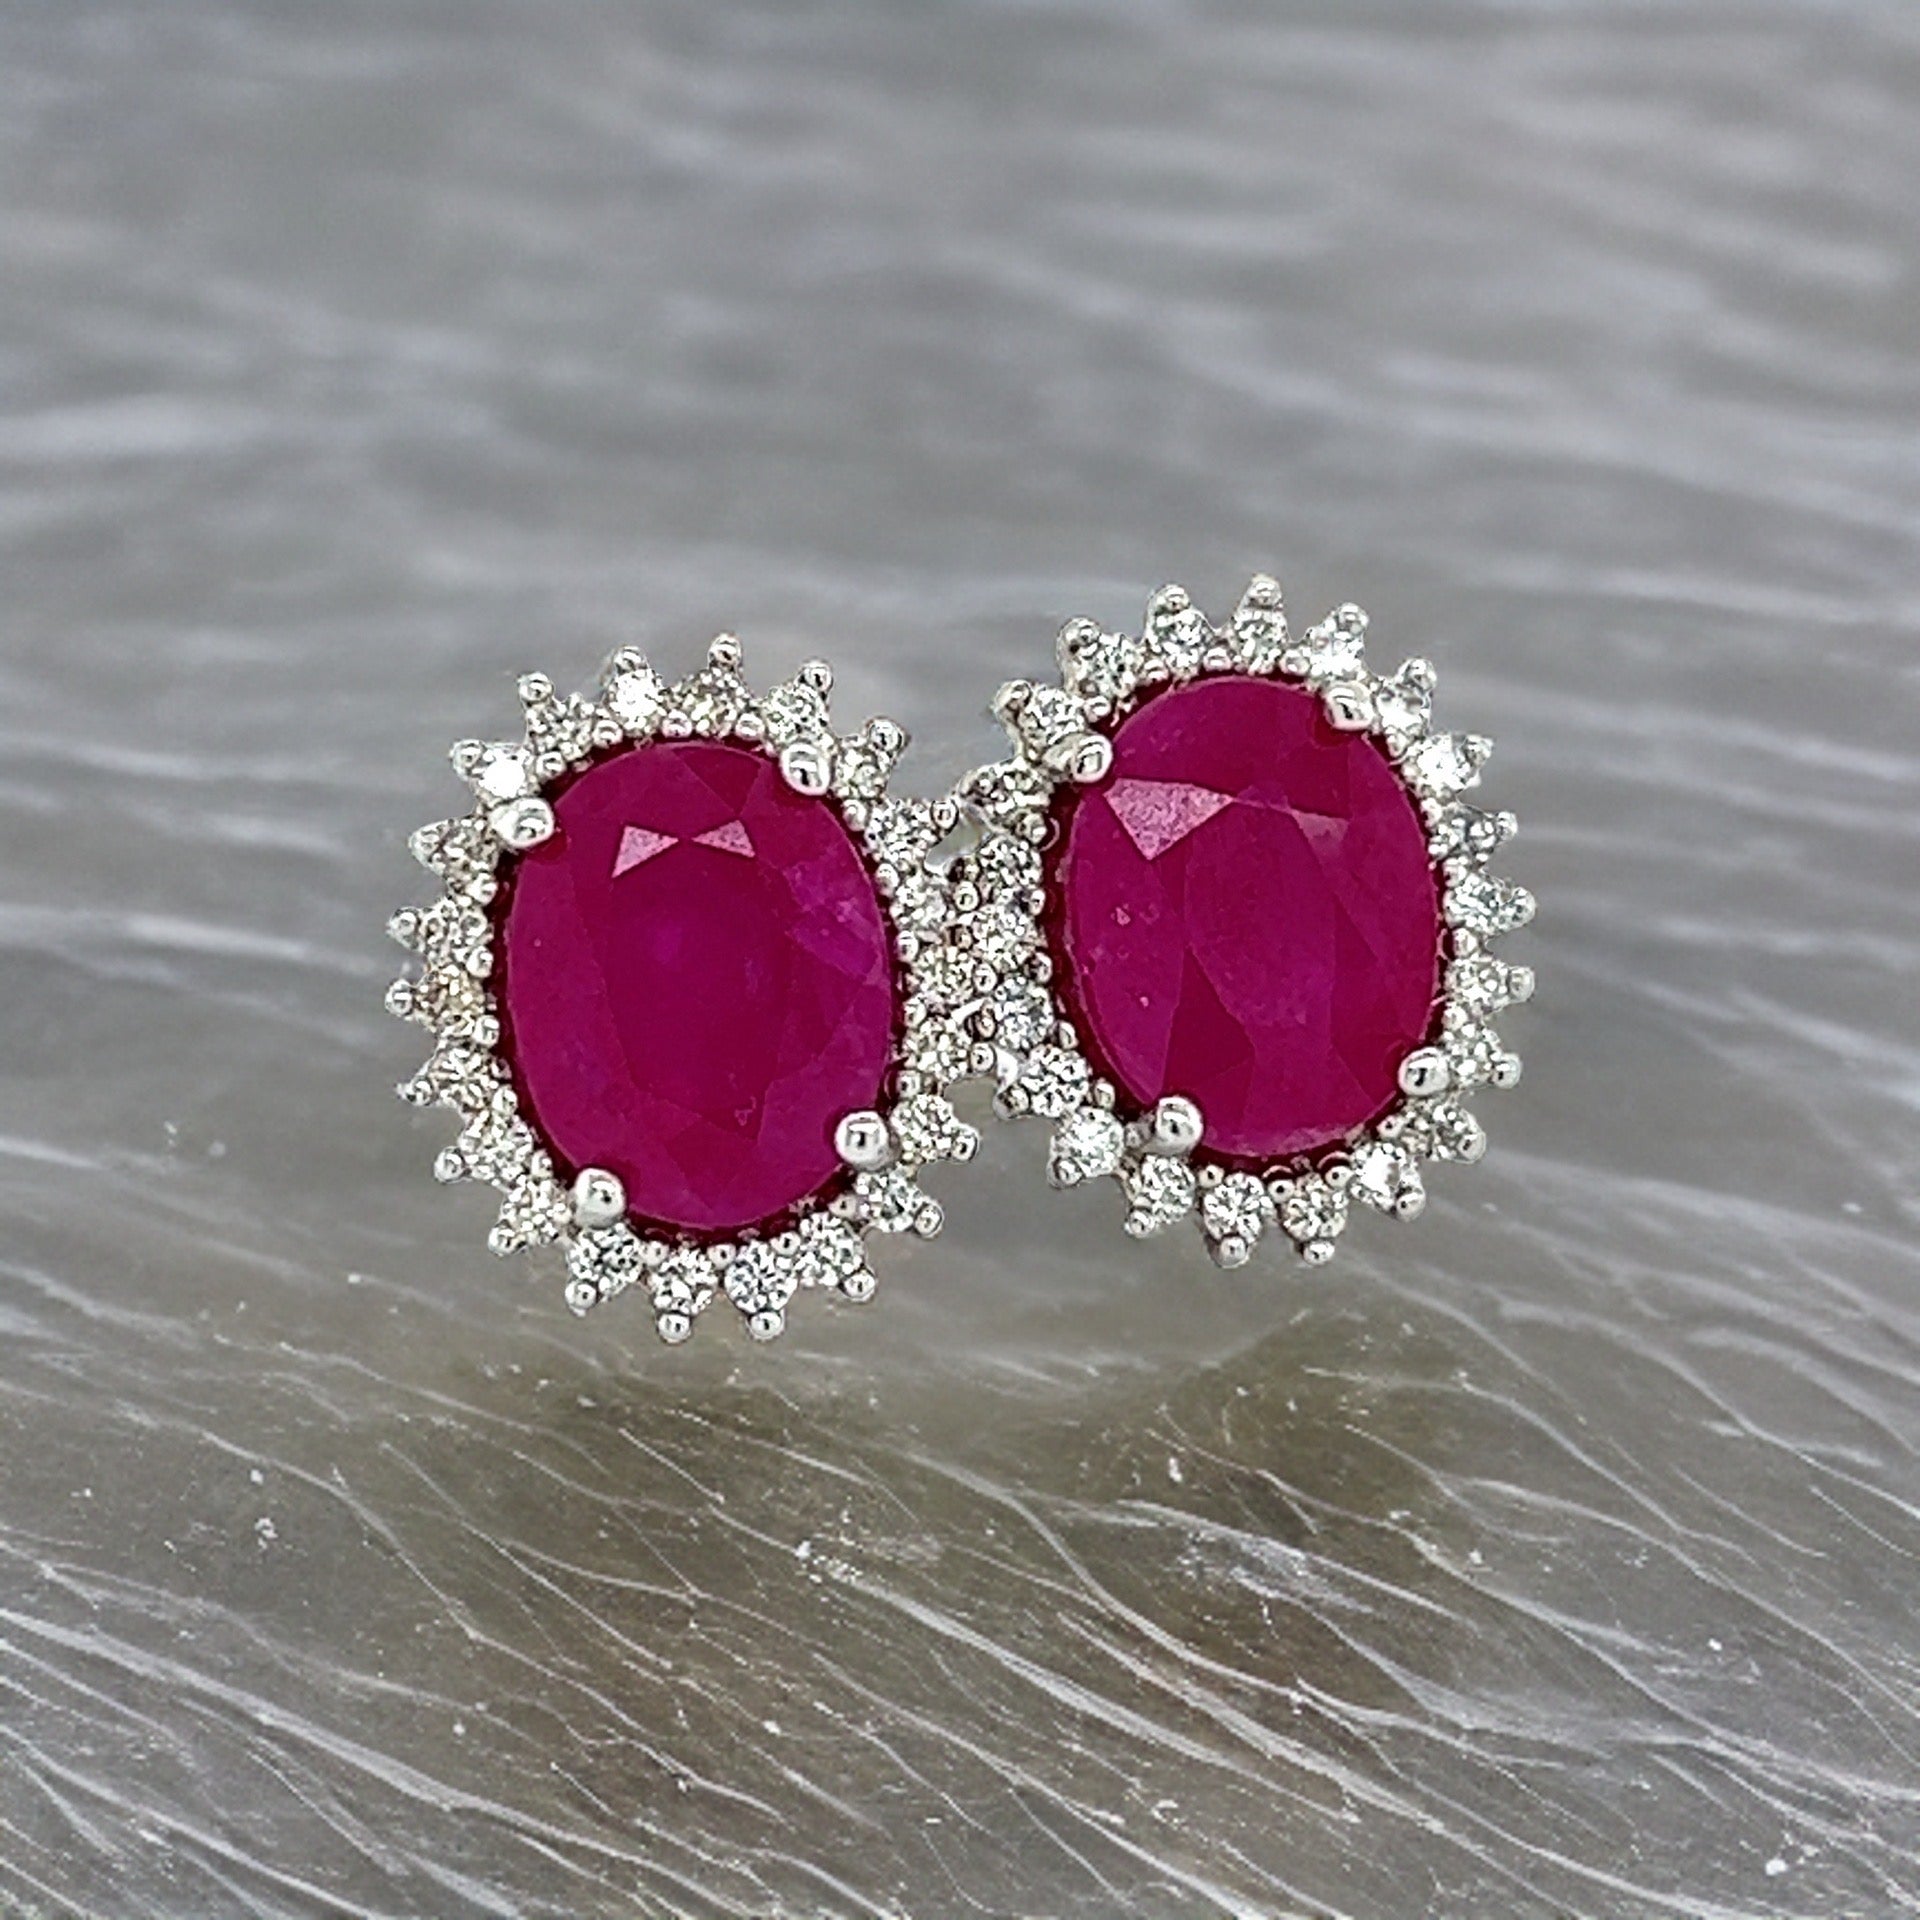 Natural Ruby Diamond Stud Earrings 14k W Gold 5.74 TCW Certified $5,175 211889 - Certified Fine Jewelry